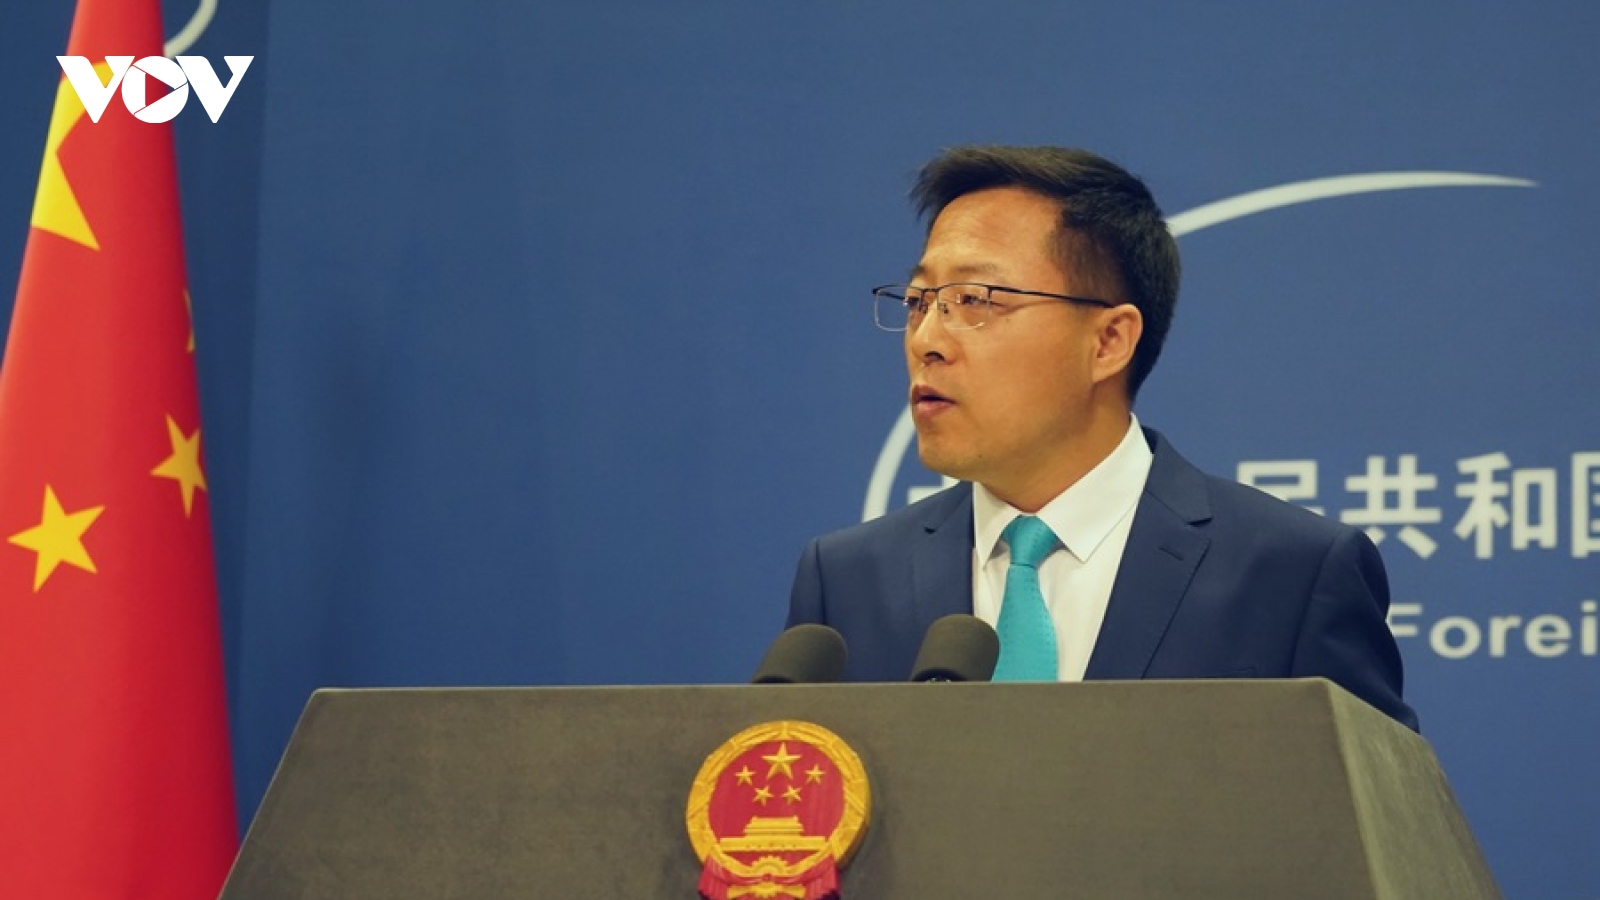 Trung Quốc dọa “chọc mù mắt” Liên minh tình báo Ngũ Nhãn do chỉ trích về Hong Kong